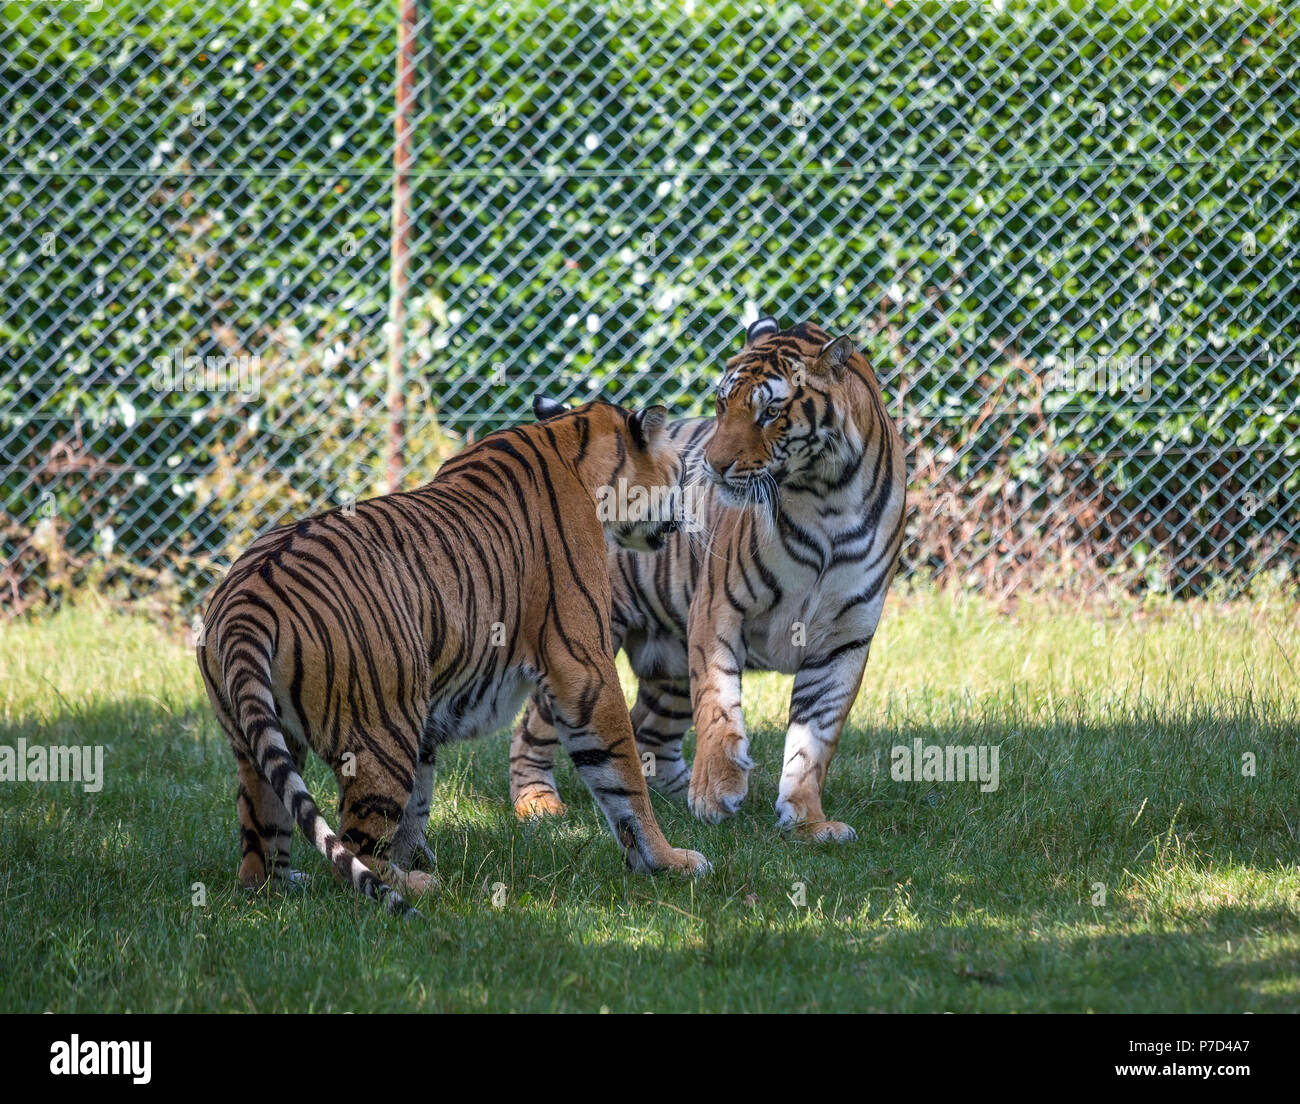 Couple de tigres ressemblent à des combats dans une zone ouverte. Banque D'Images